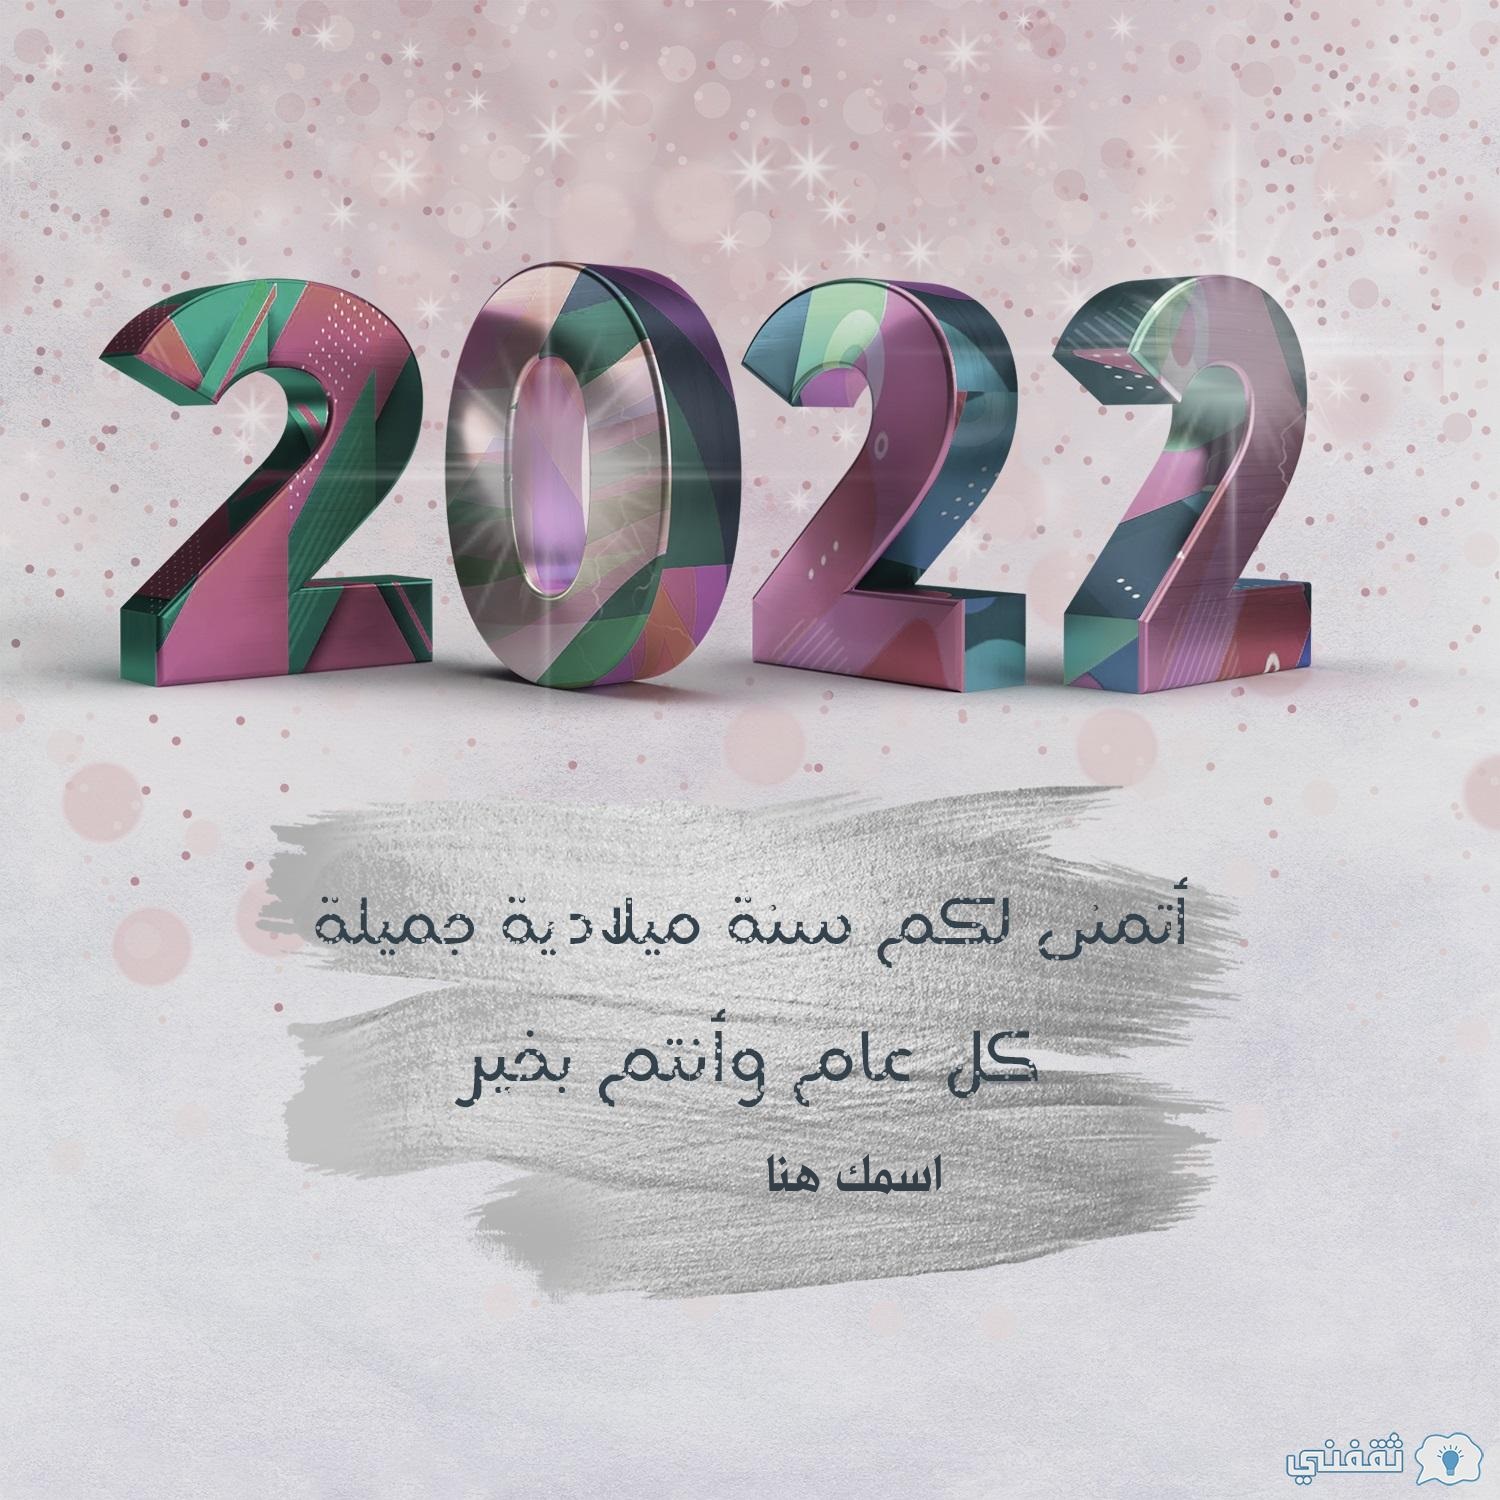 اسمك على صورة السنة الميلادية الجديدة 2022